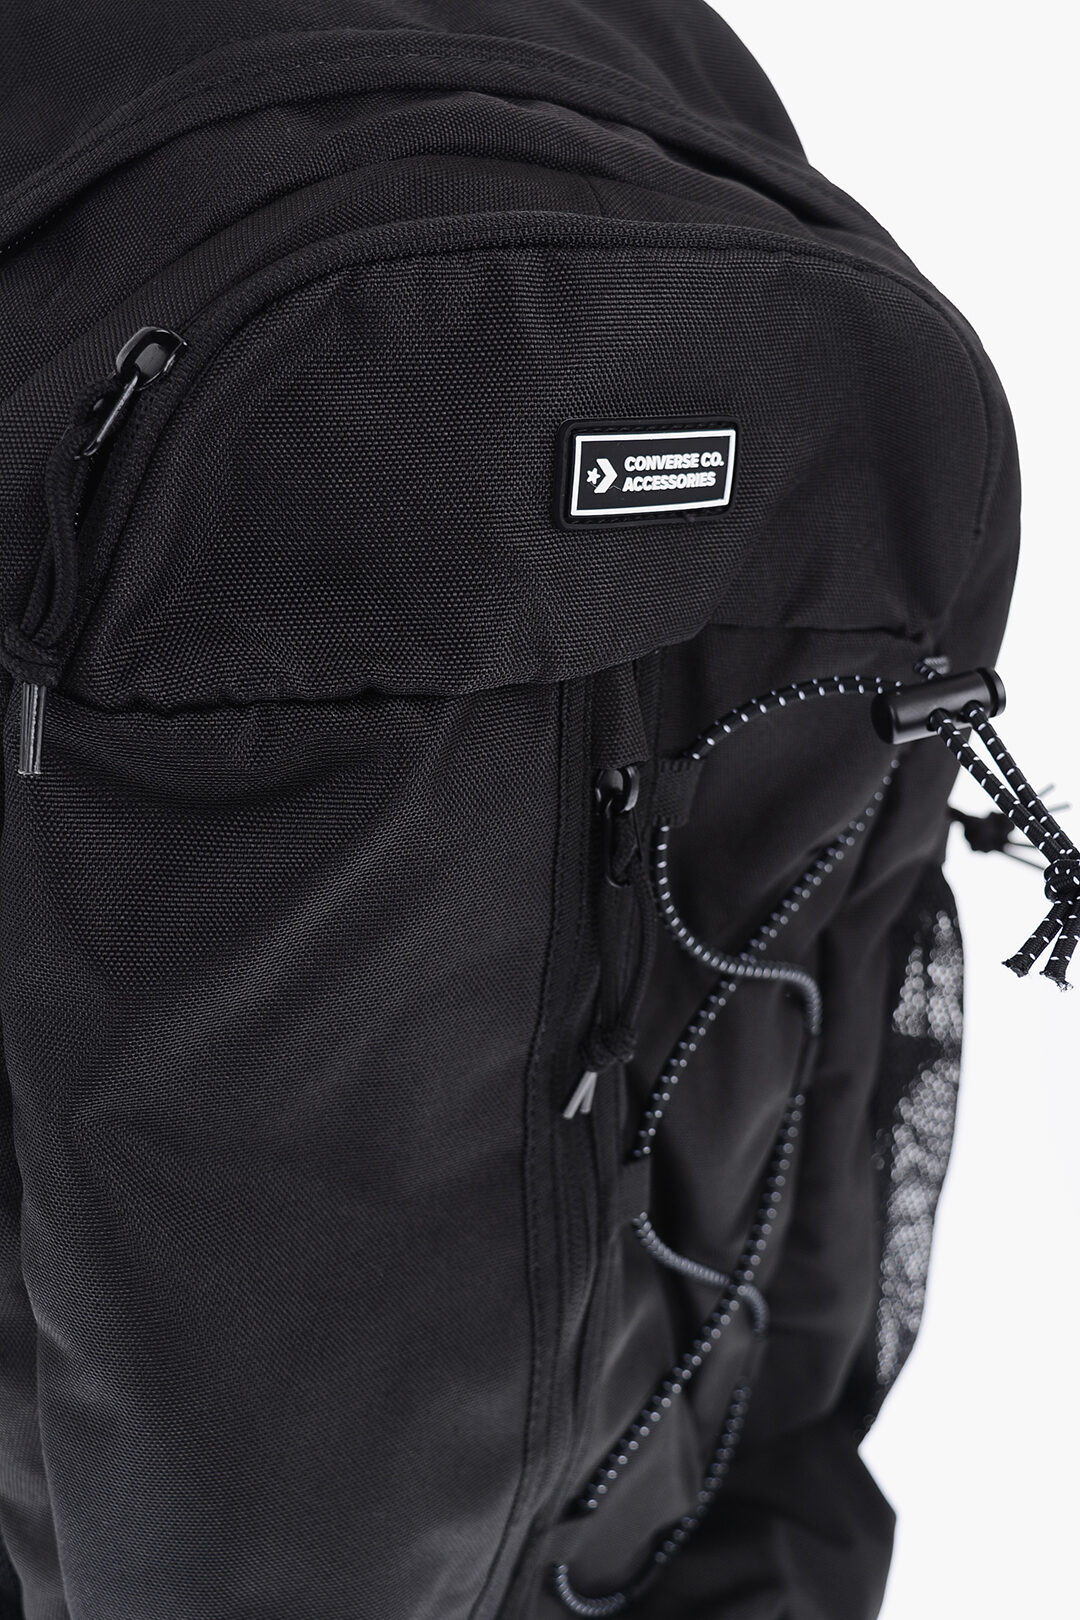 Bevidst Minimer blive imponeret Converse Solid Color TRANSITION Backpack With Elastic Inserts unisex men  women - Glamood Outlet